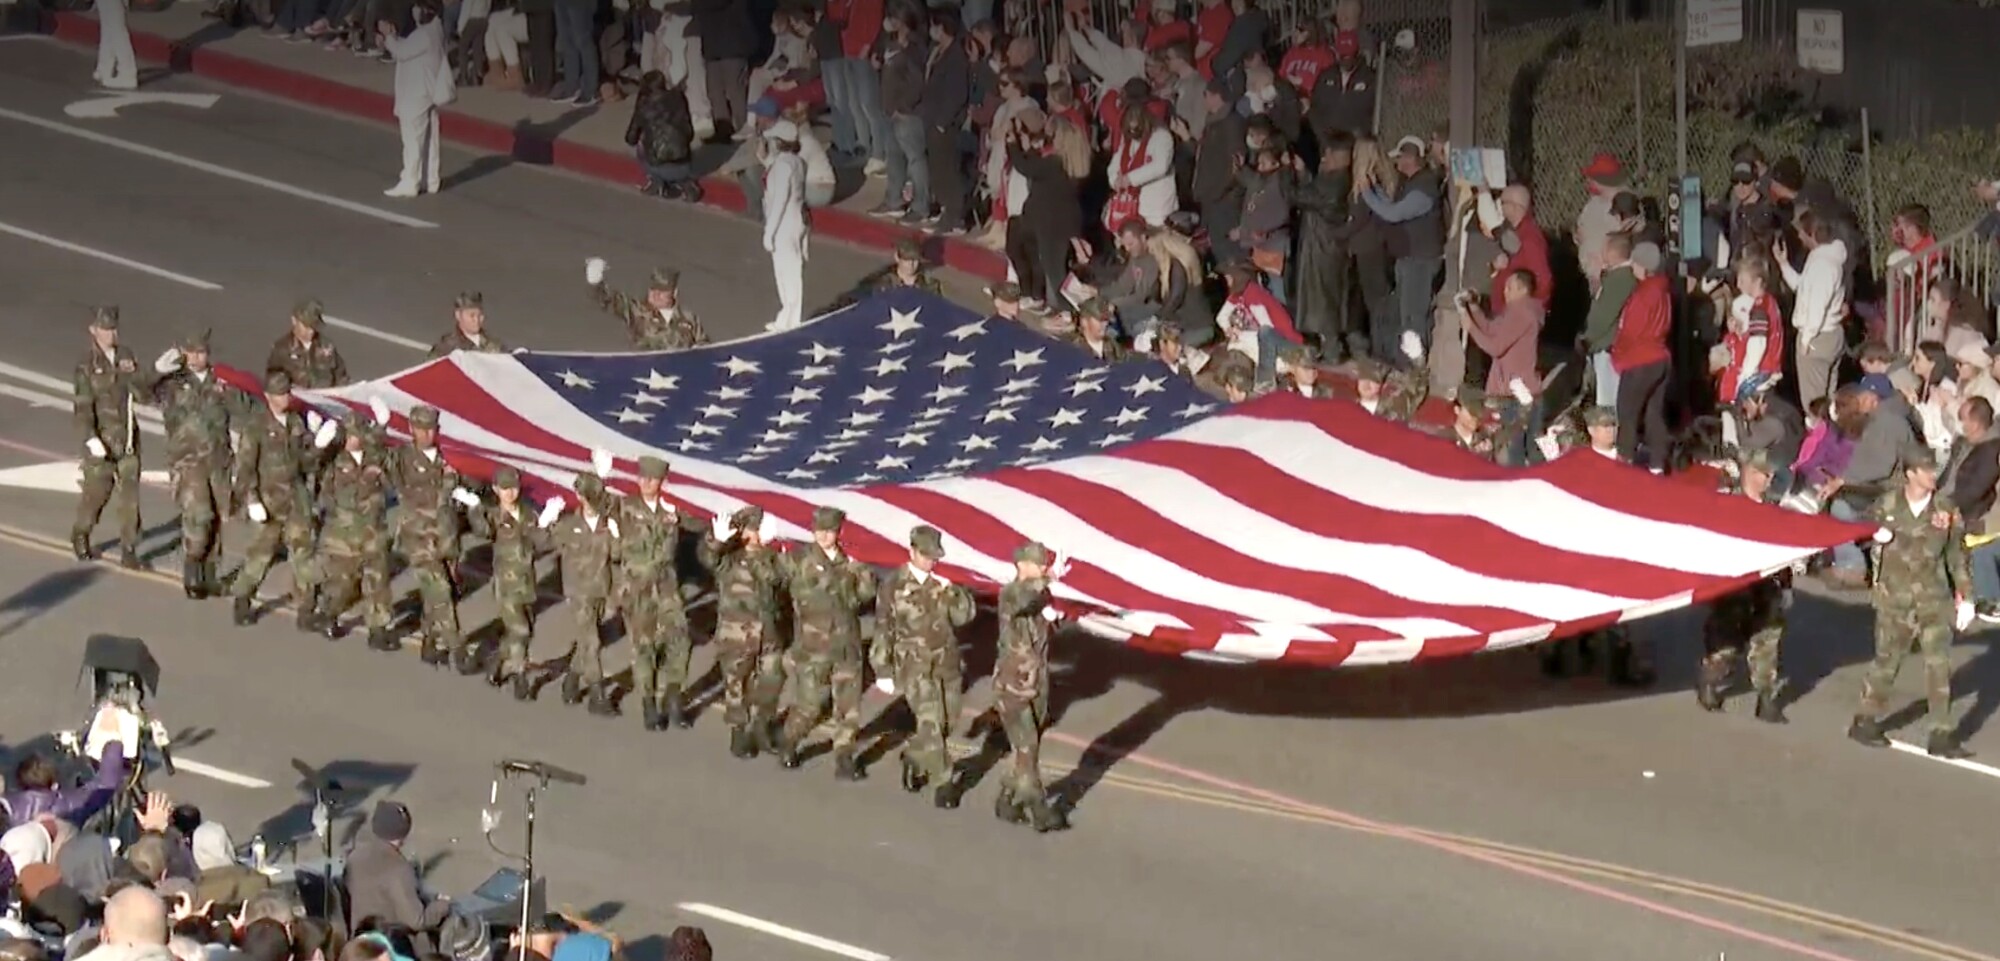 افرادی با لباس نظامی پرچم بزرگ ایالات متحده را حمل می کنند.